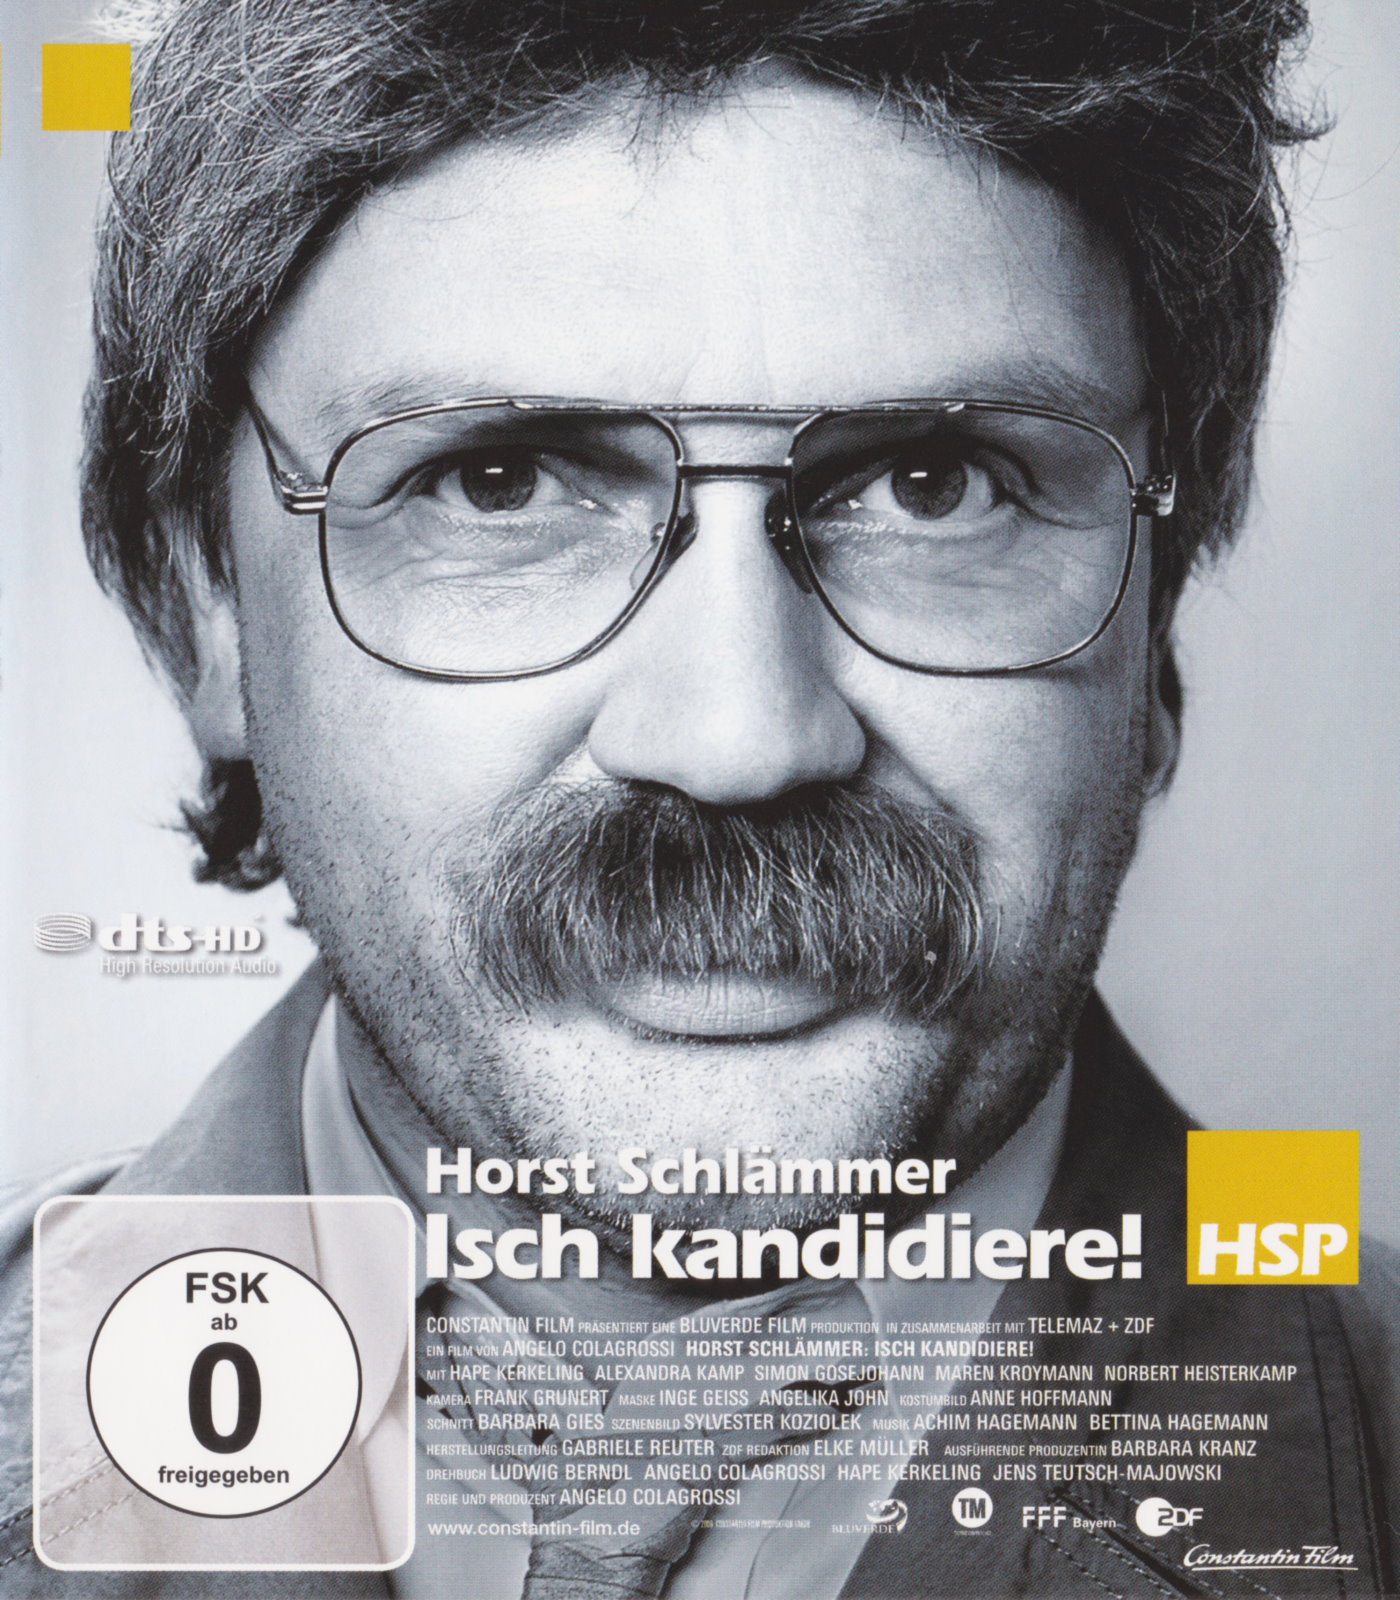 Cover - Horst Schlämmer - Isch kandidiere!.jpg